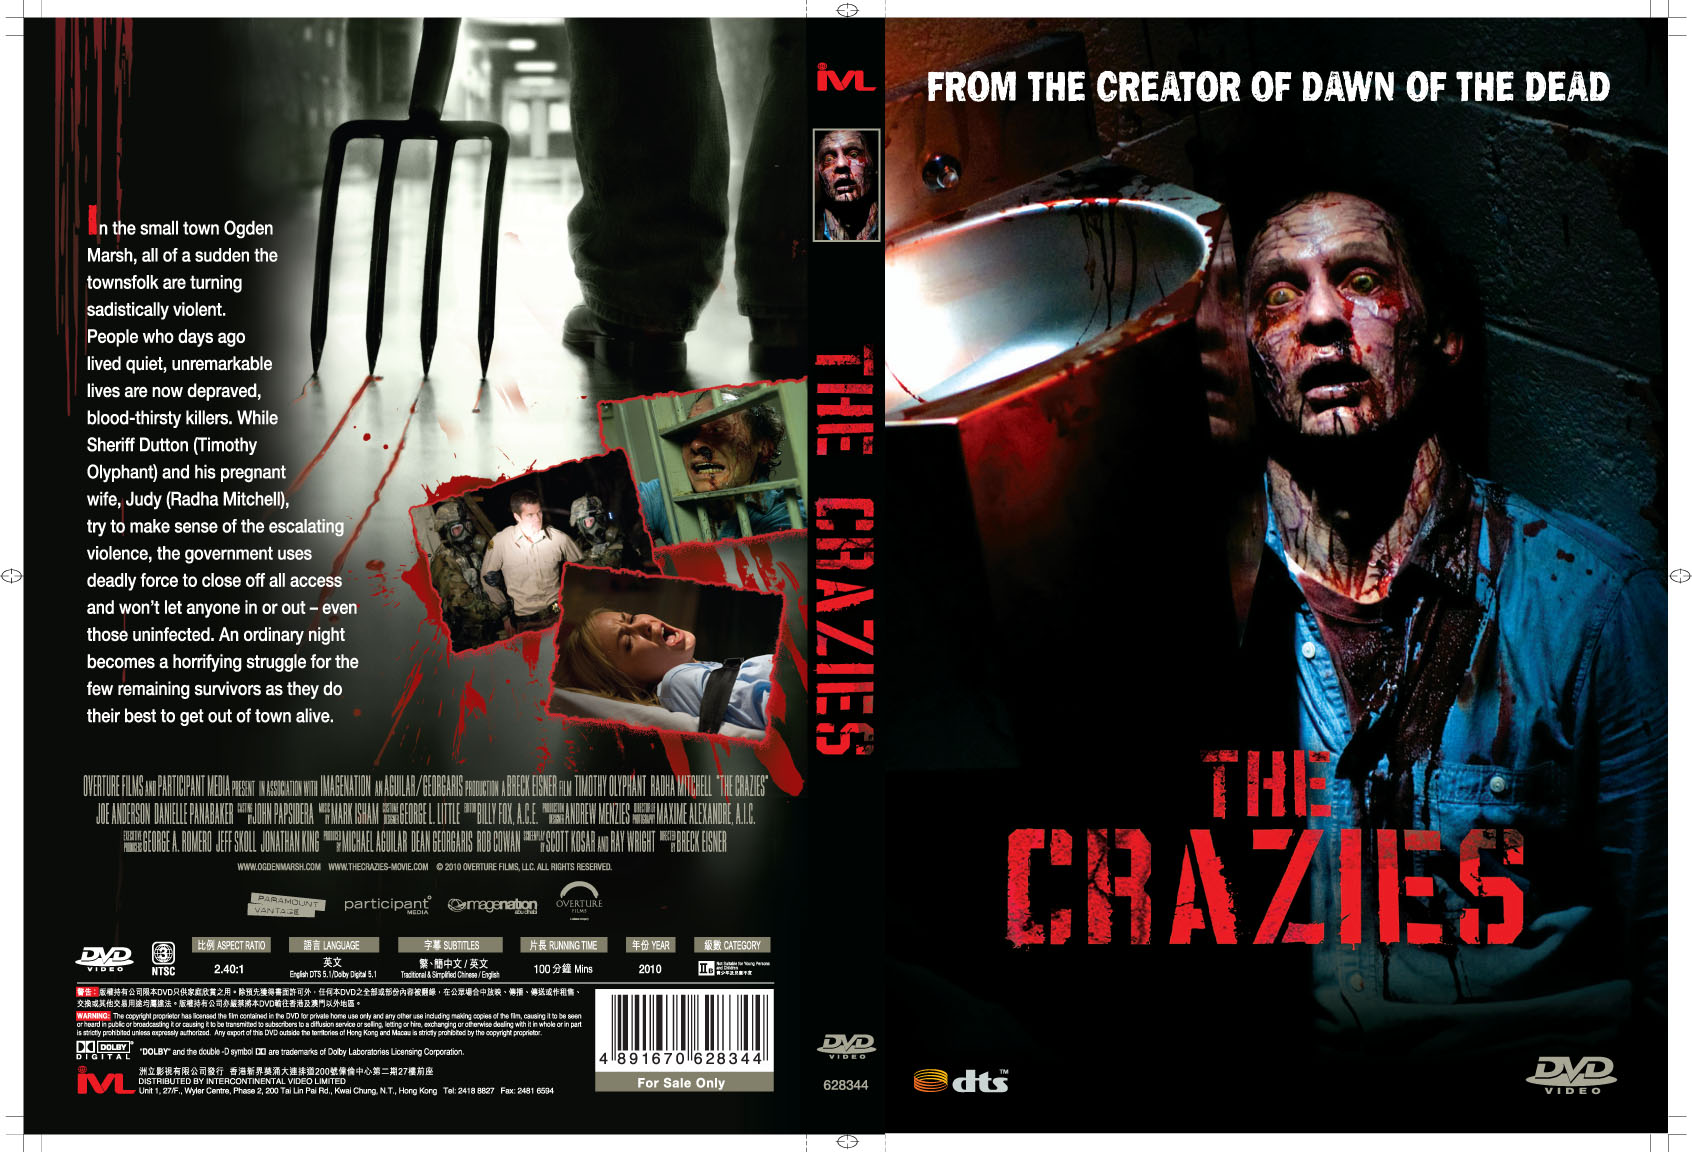 Crazies DVD Sleeve_HK.jpg